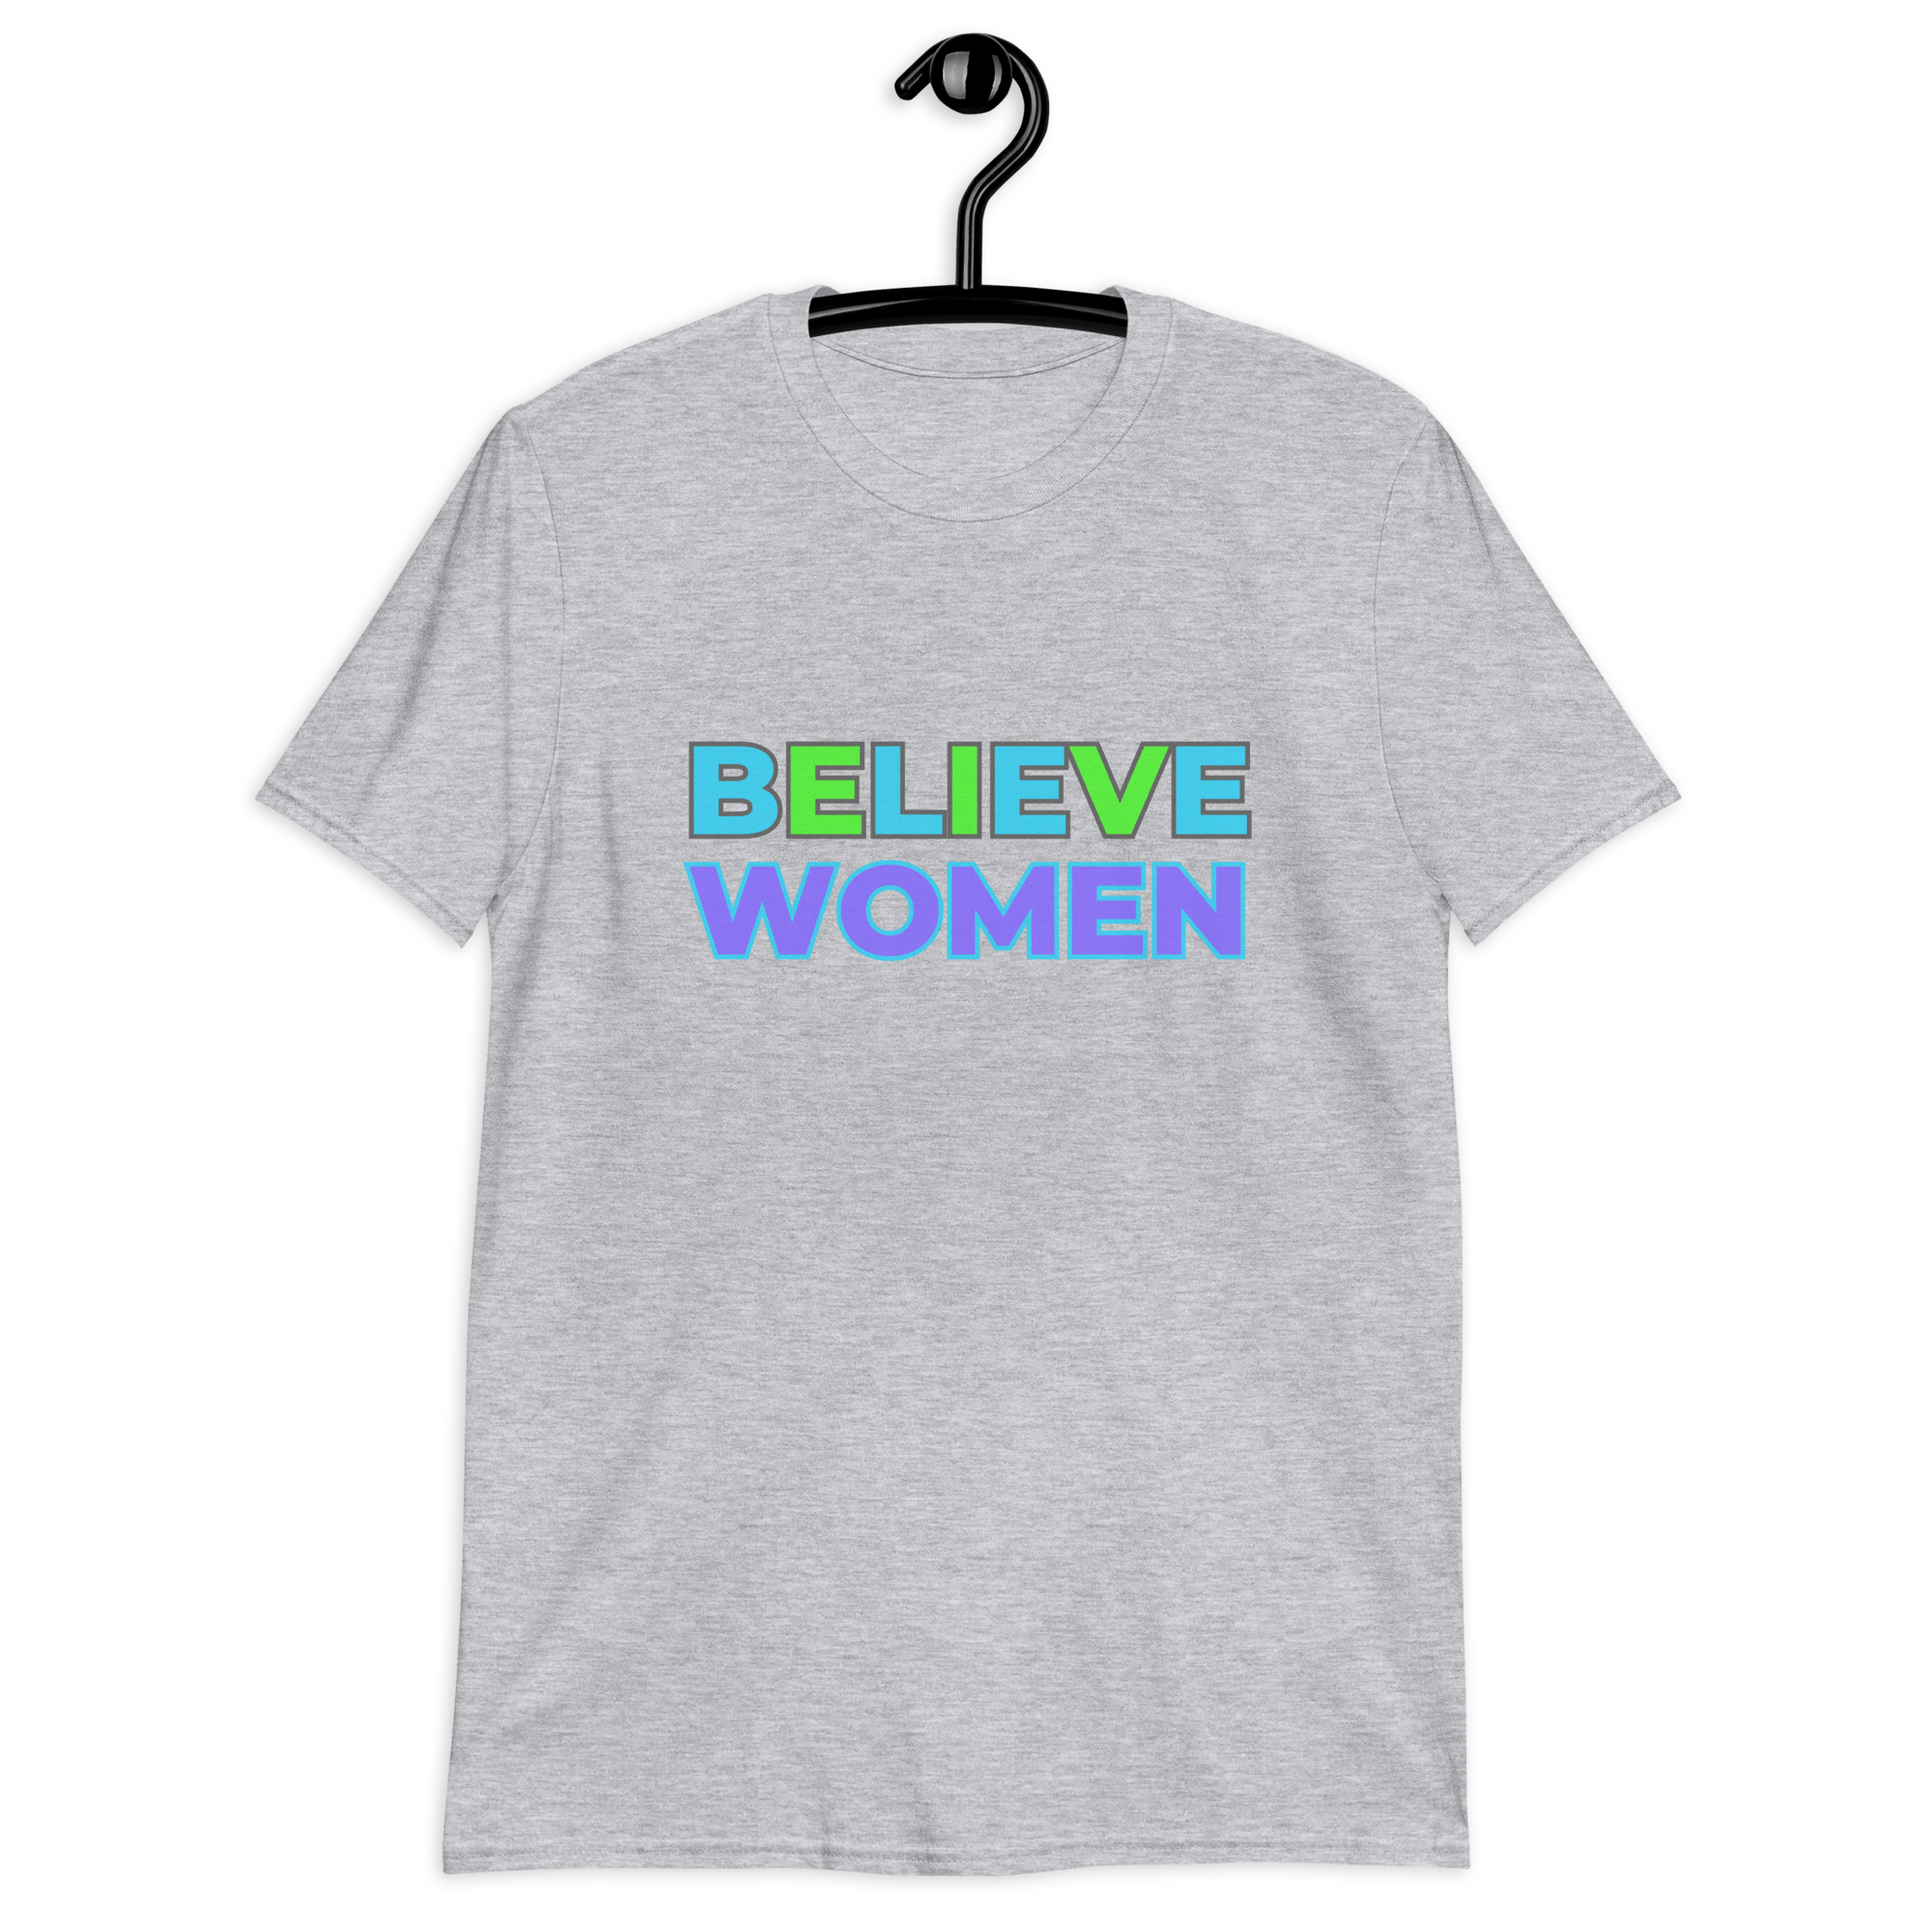 Believe Women Crew Neck Tee - Grey